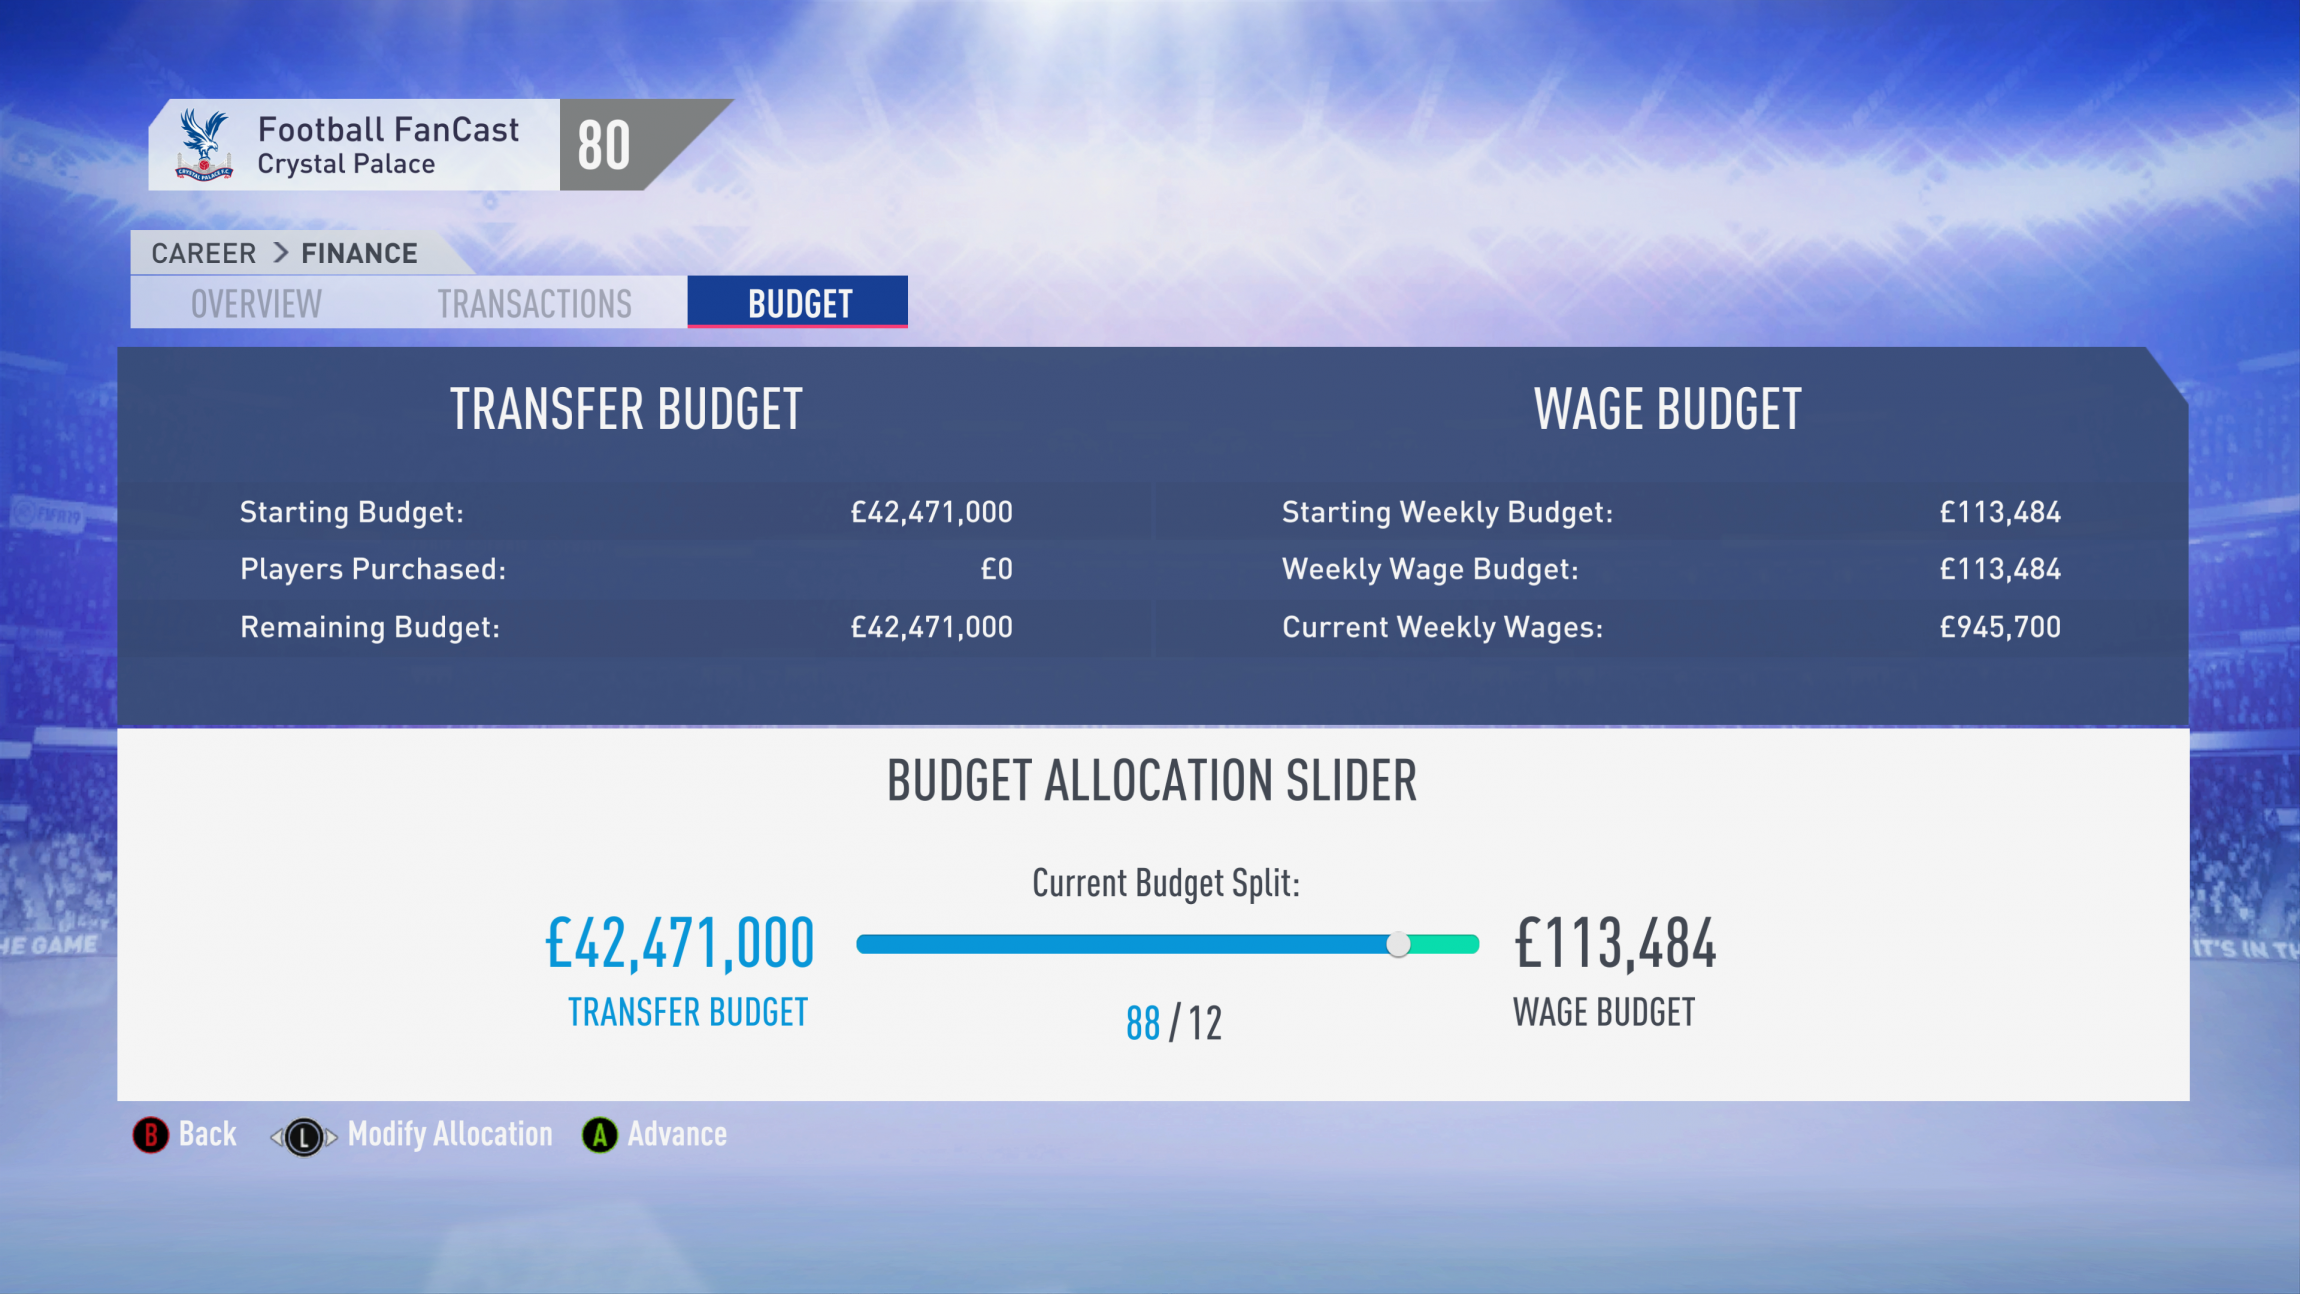 FIFA 19 Career Mode - Crystal Palace Budget